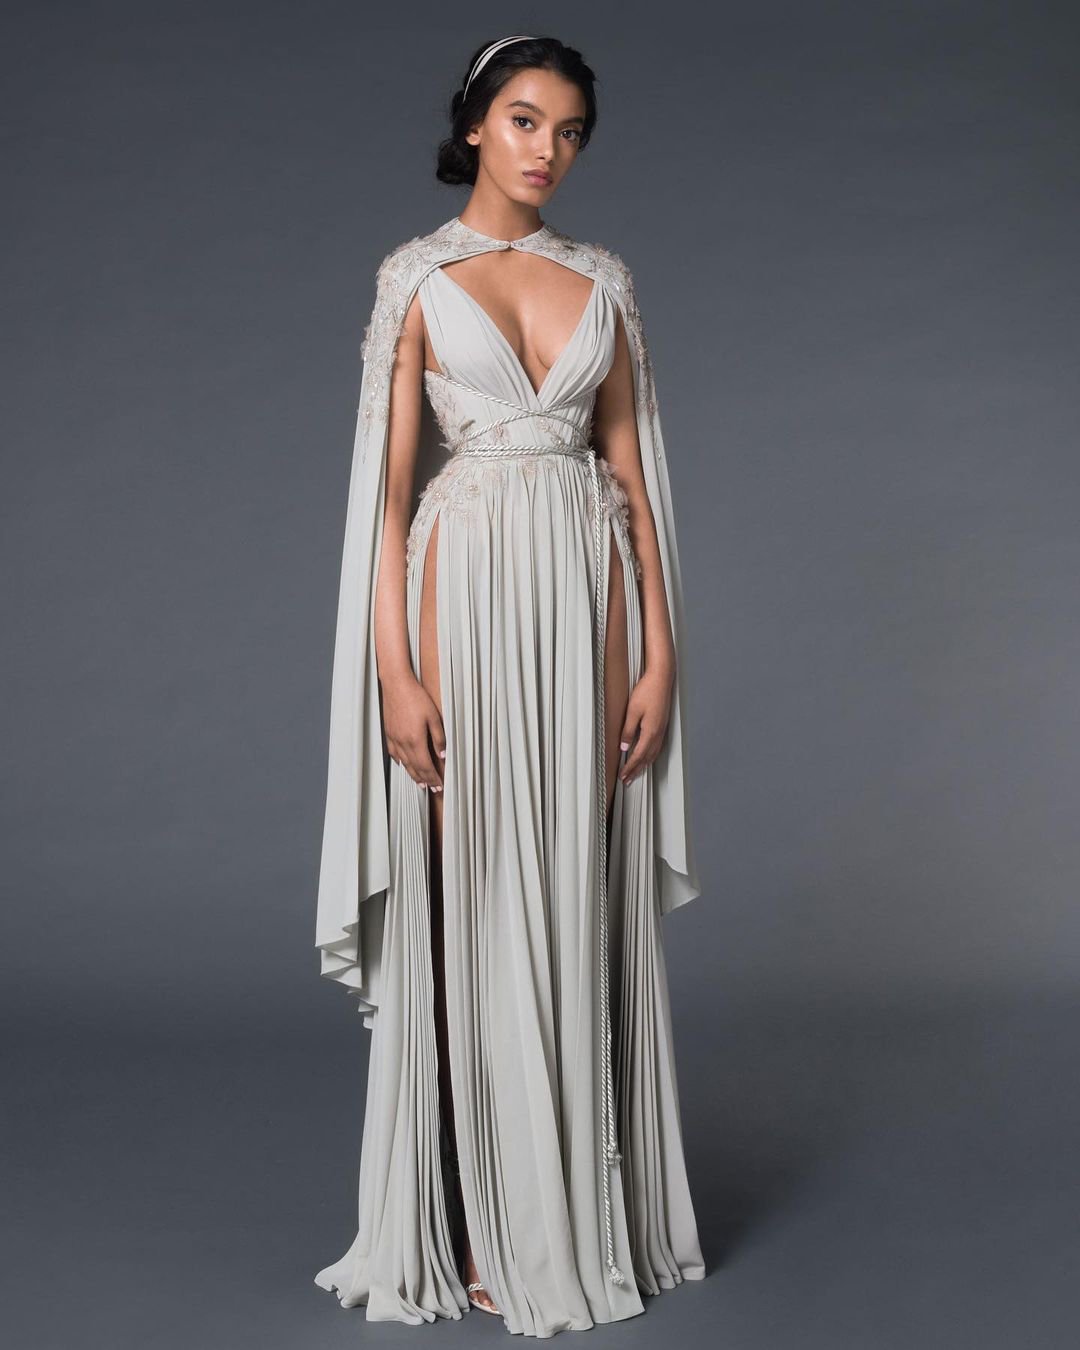 greek wedding dresses empire with cape v neckline paolo_sebastian